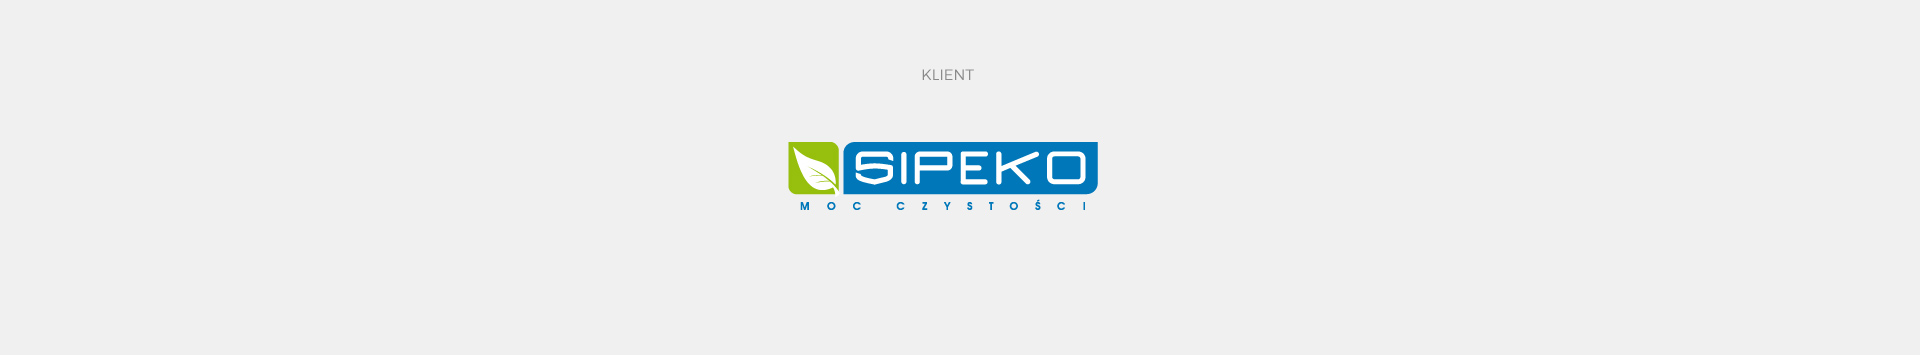 Sipeko - Realizacja - Agencja ROXART